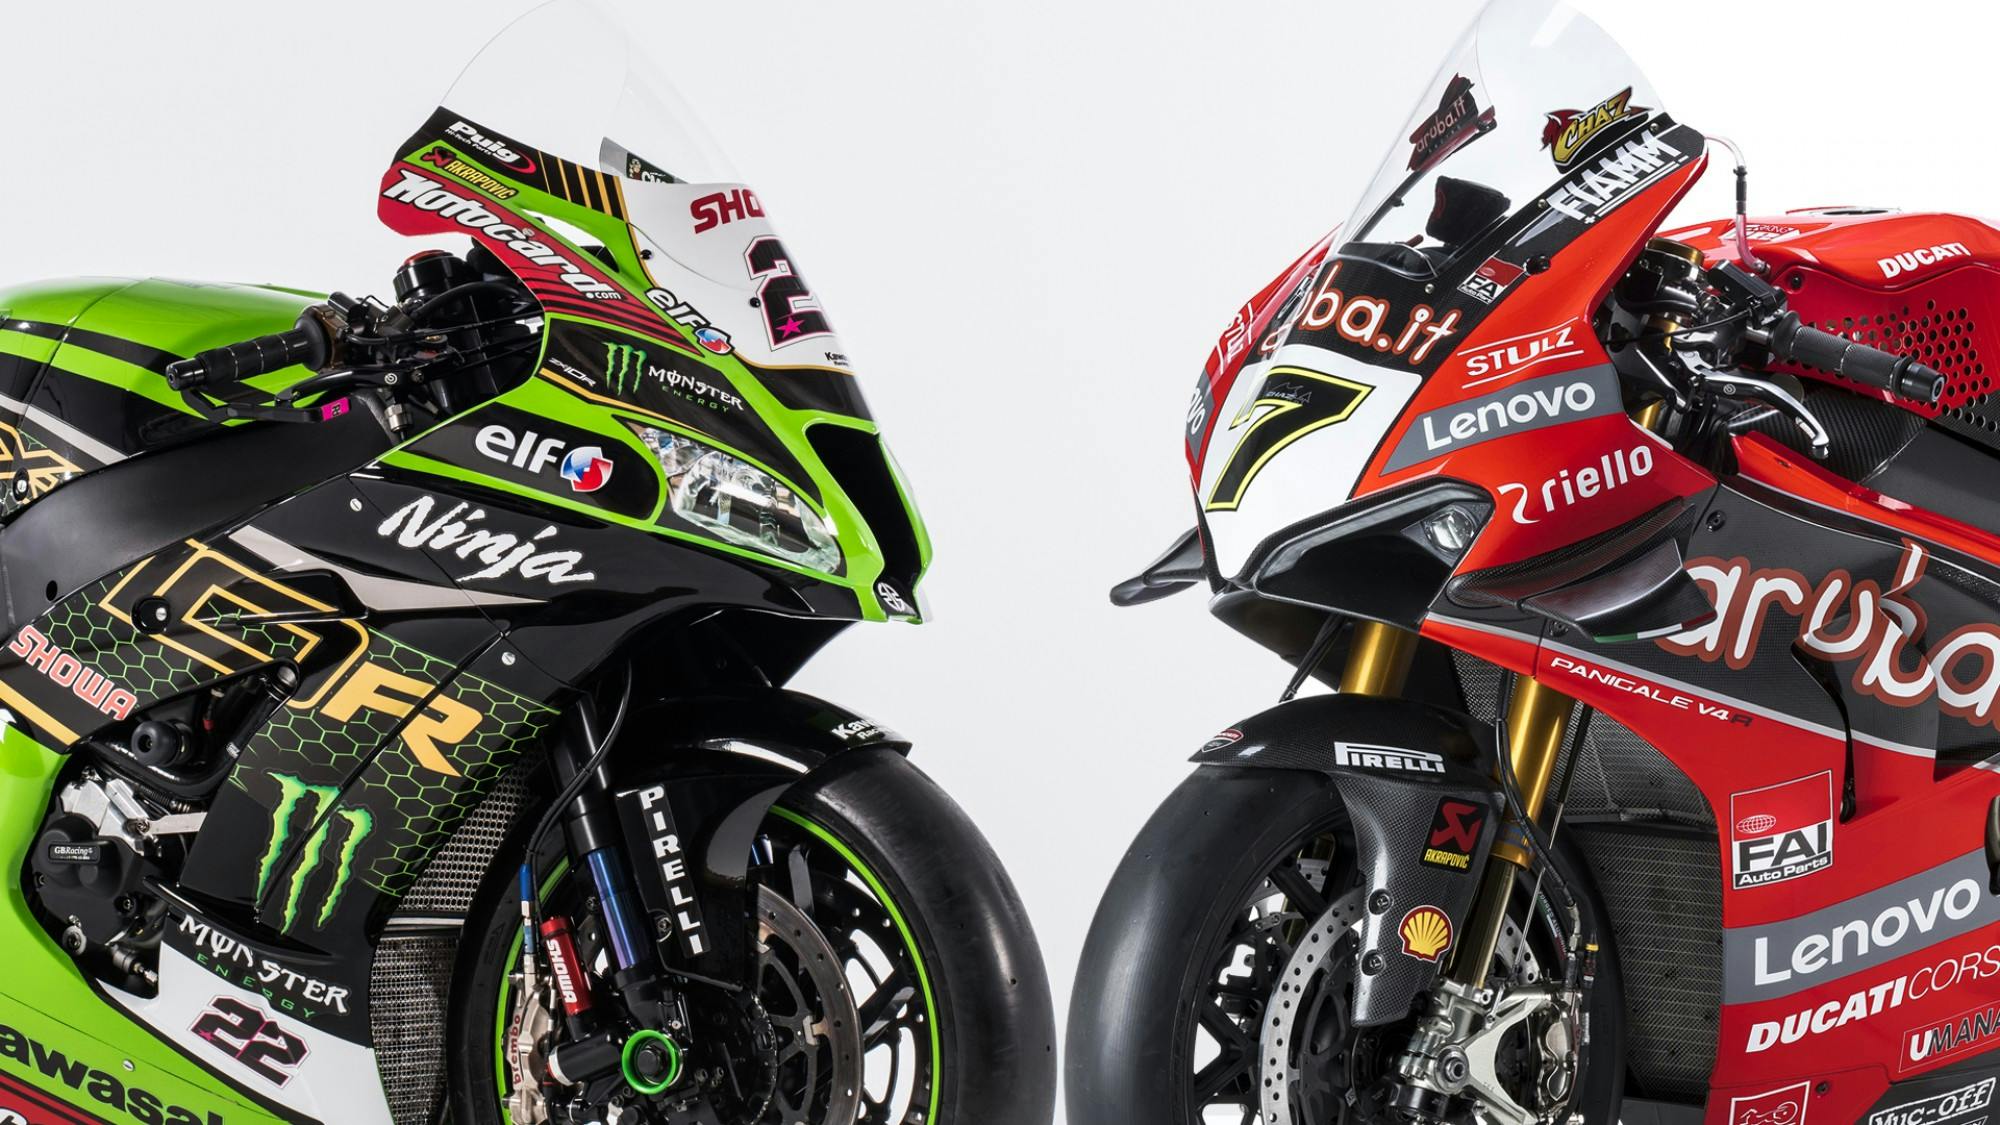 Kawasaki super-sport motorcycle  and a Ducati super-sport motorcycle  facing each other